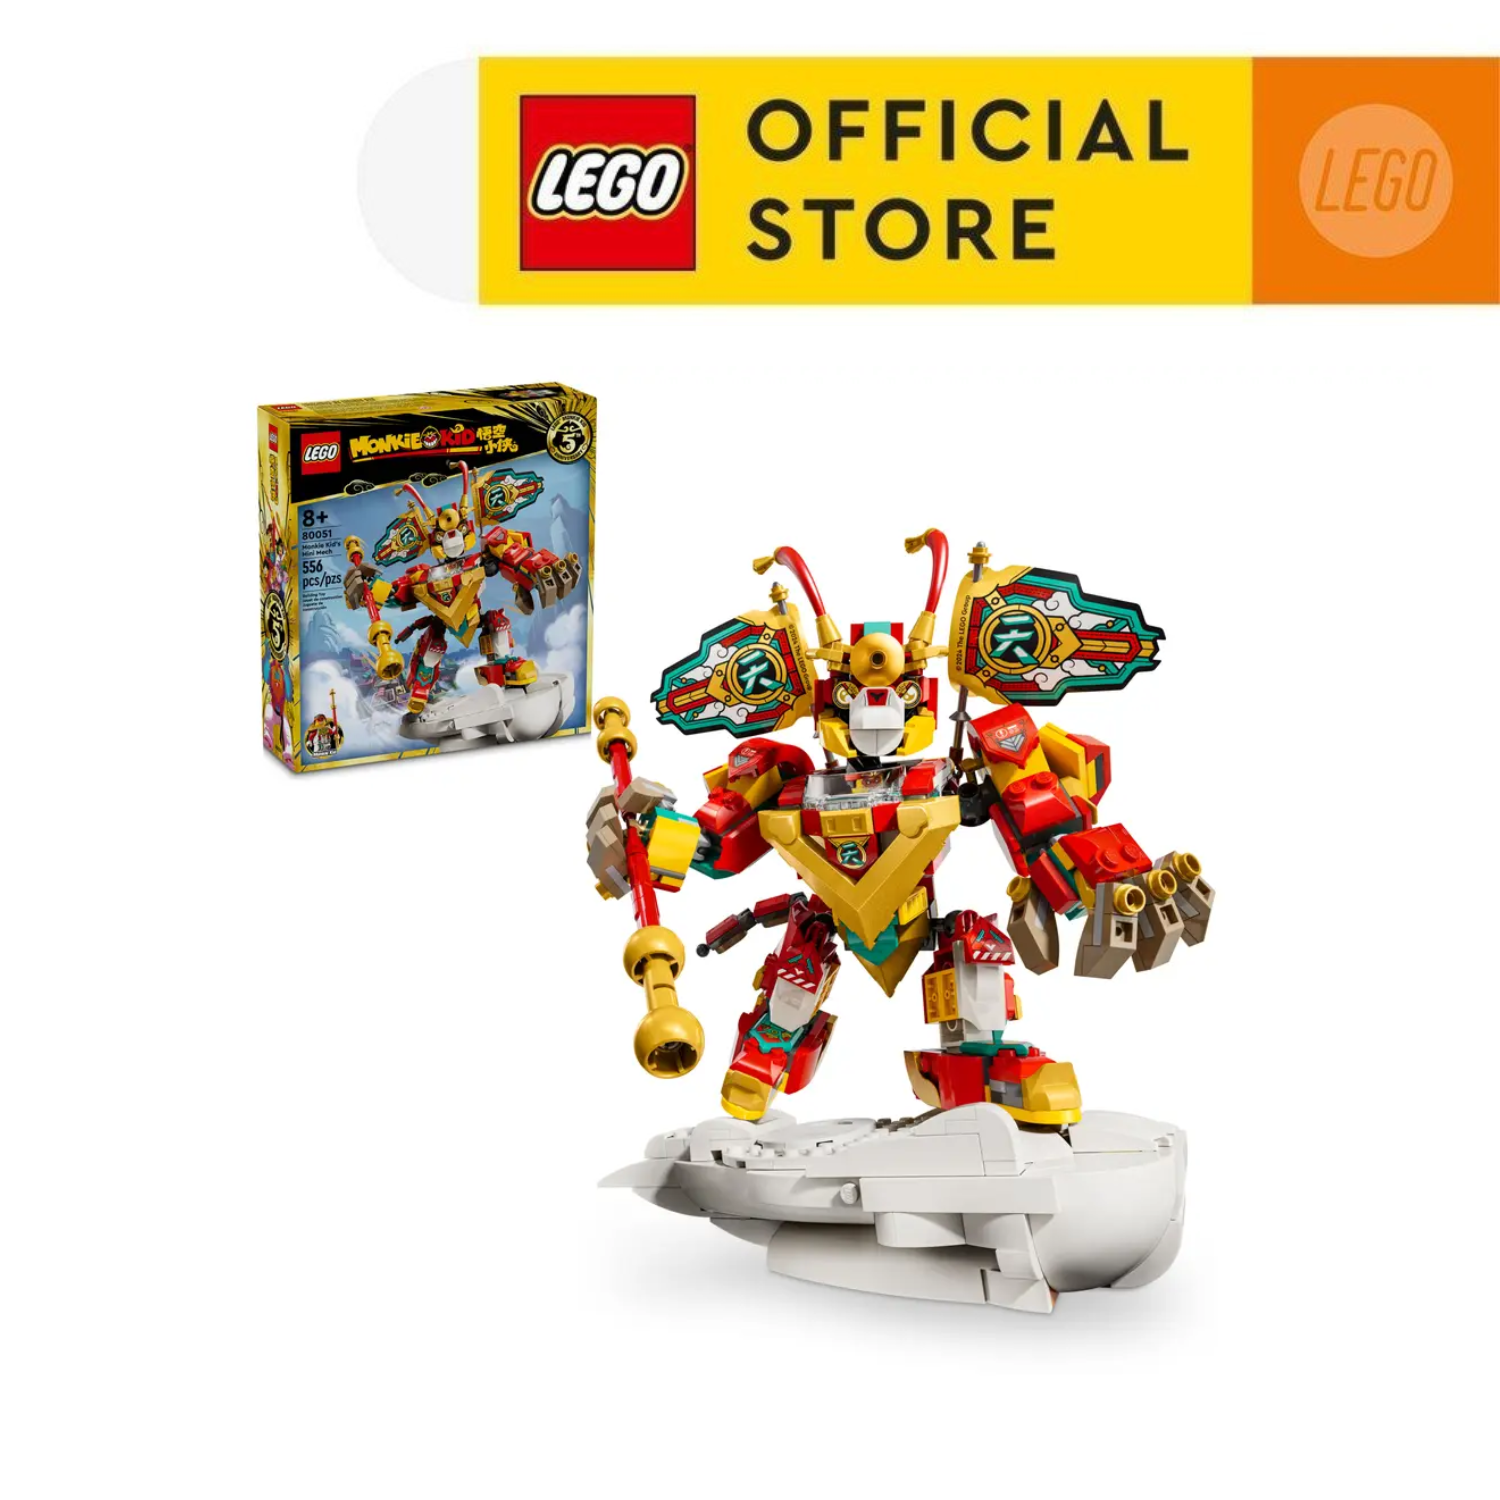 Hình ảnh LEGO MONKIE KID 80051 Đồ Chơi Lắp Ráp Chiến Giáp (556 chi tiết)